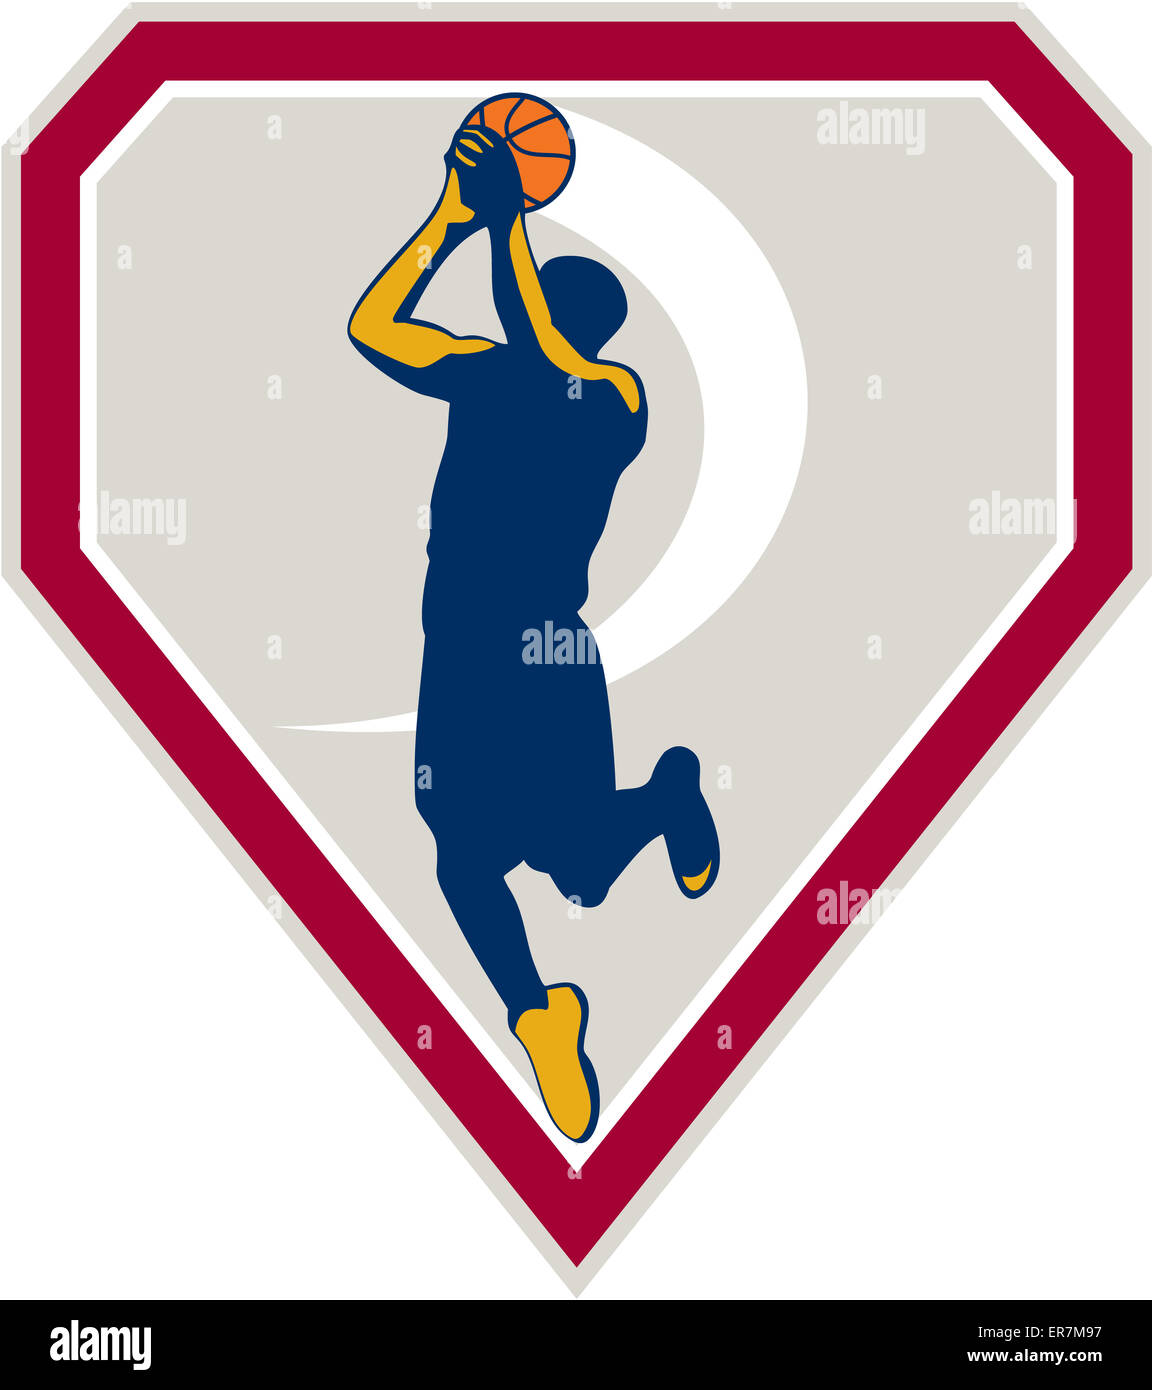 Ilustración de un jugador de baloncesto tiro disparo puente saltando dentro de Crest escudo sobre fondo aislado de este estilo retro. Foto de stock